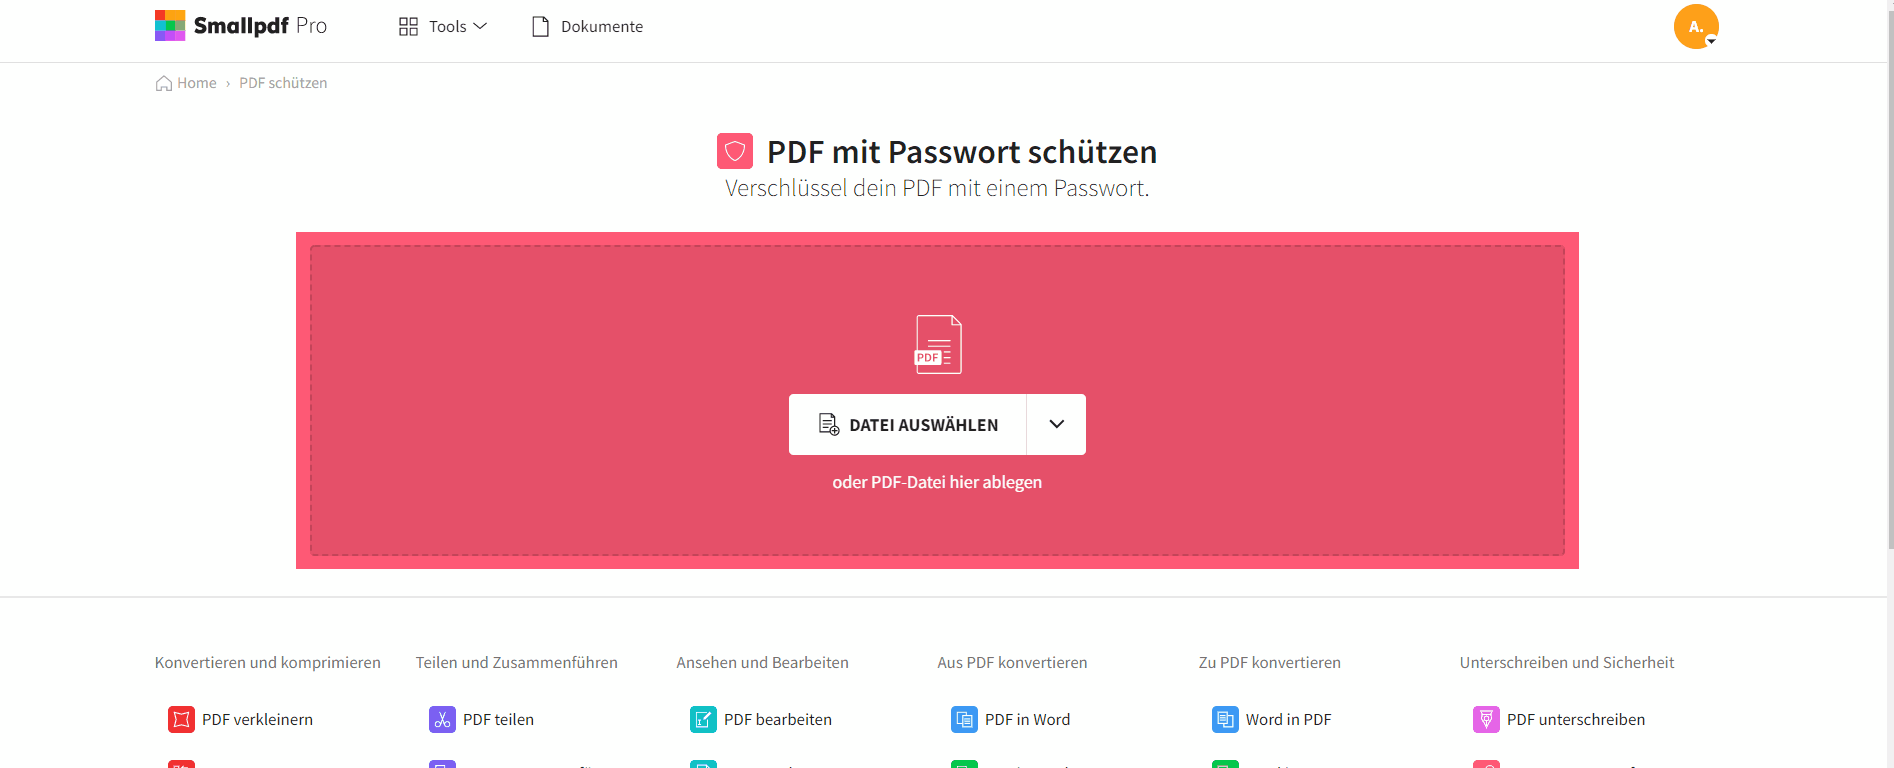 2021-11-01 - Wie man auf die altmodische Art ein starkes Passwort erstellt - PDF schützen